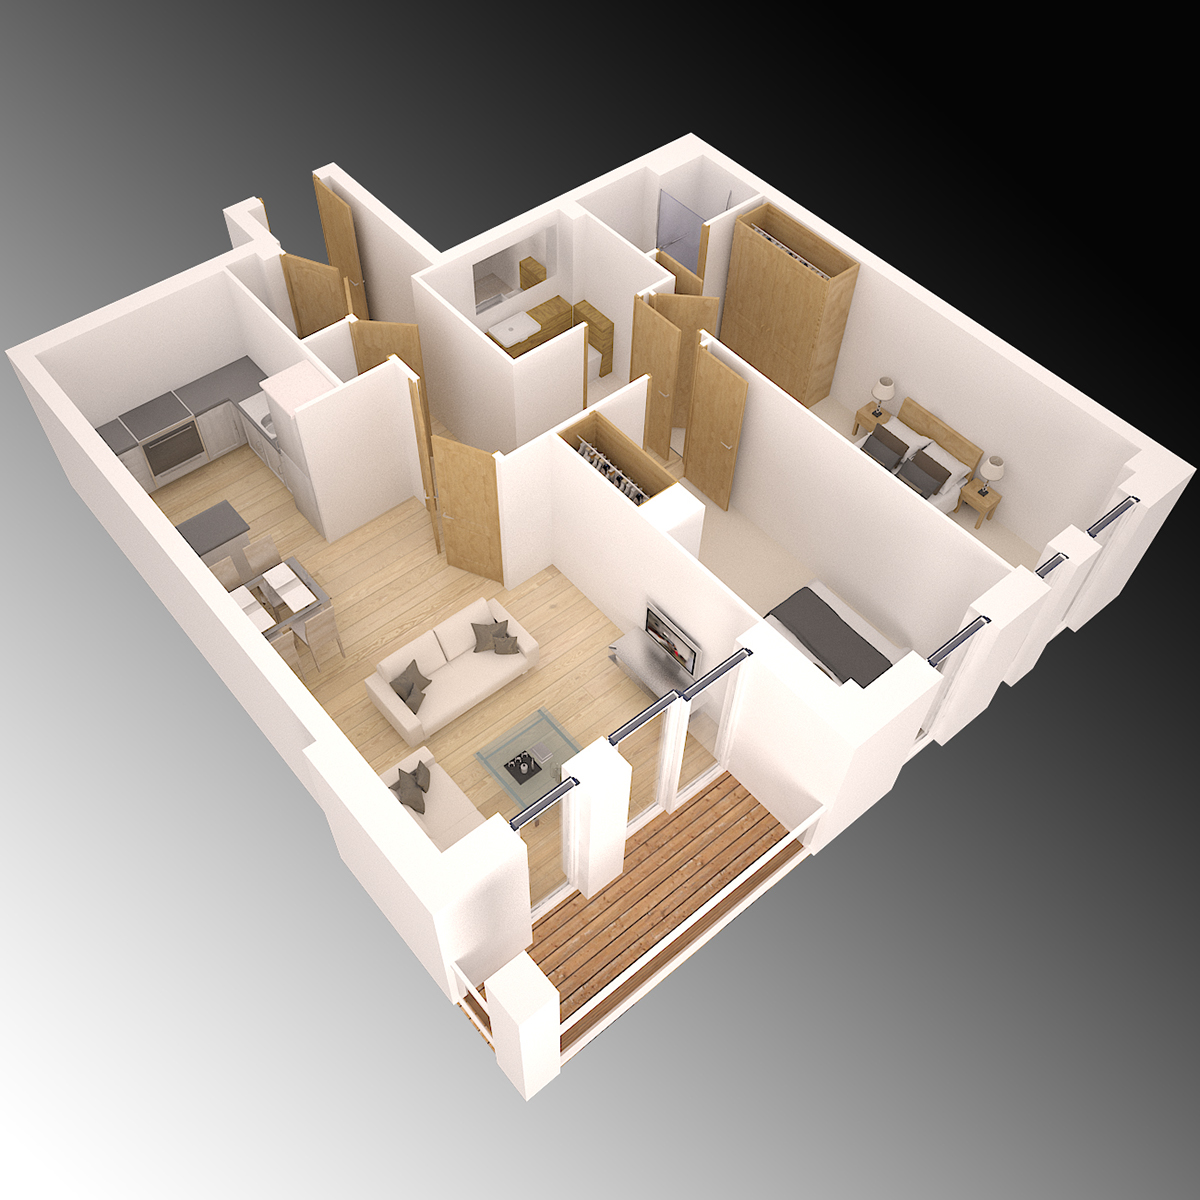 Render rendering Interior 3dmodel 3dmodeling 3dart dgitalmodel Perspective Isometric 3drender